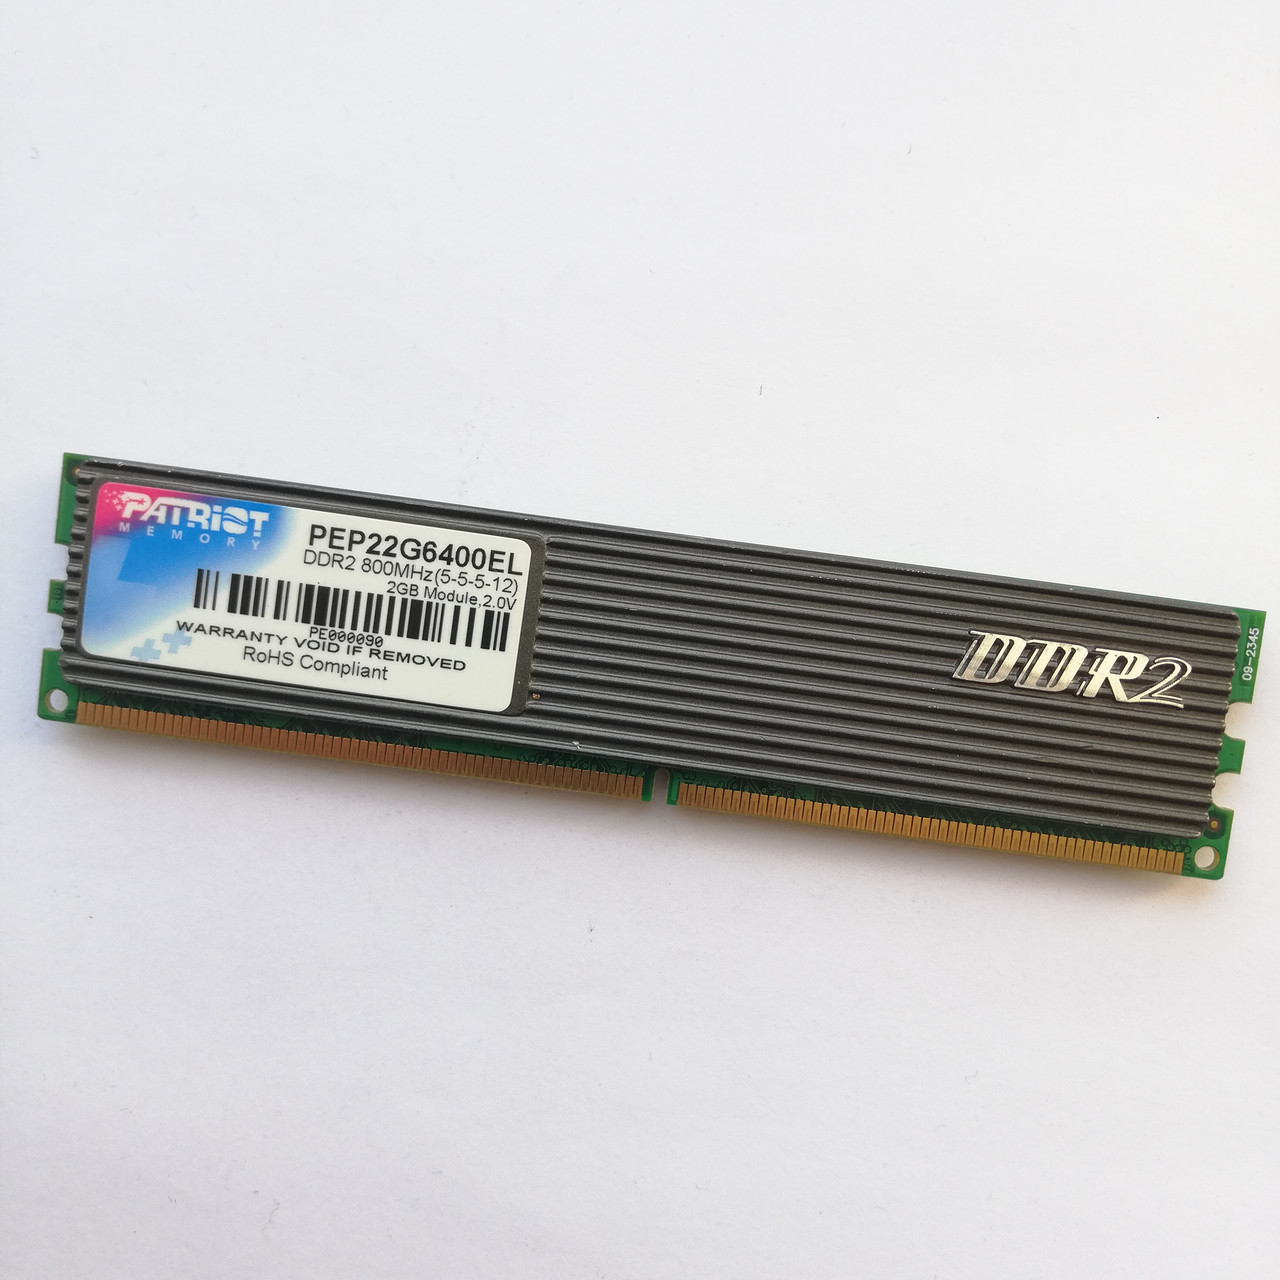 Ігрова оперативна пам'ять Patriot DDR2 2Gb 800MHz PC2 6400U CL5 (PEP22G6400EL) Б/В, фото 1